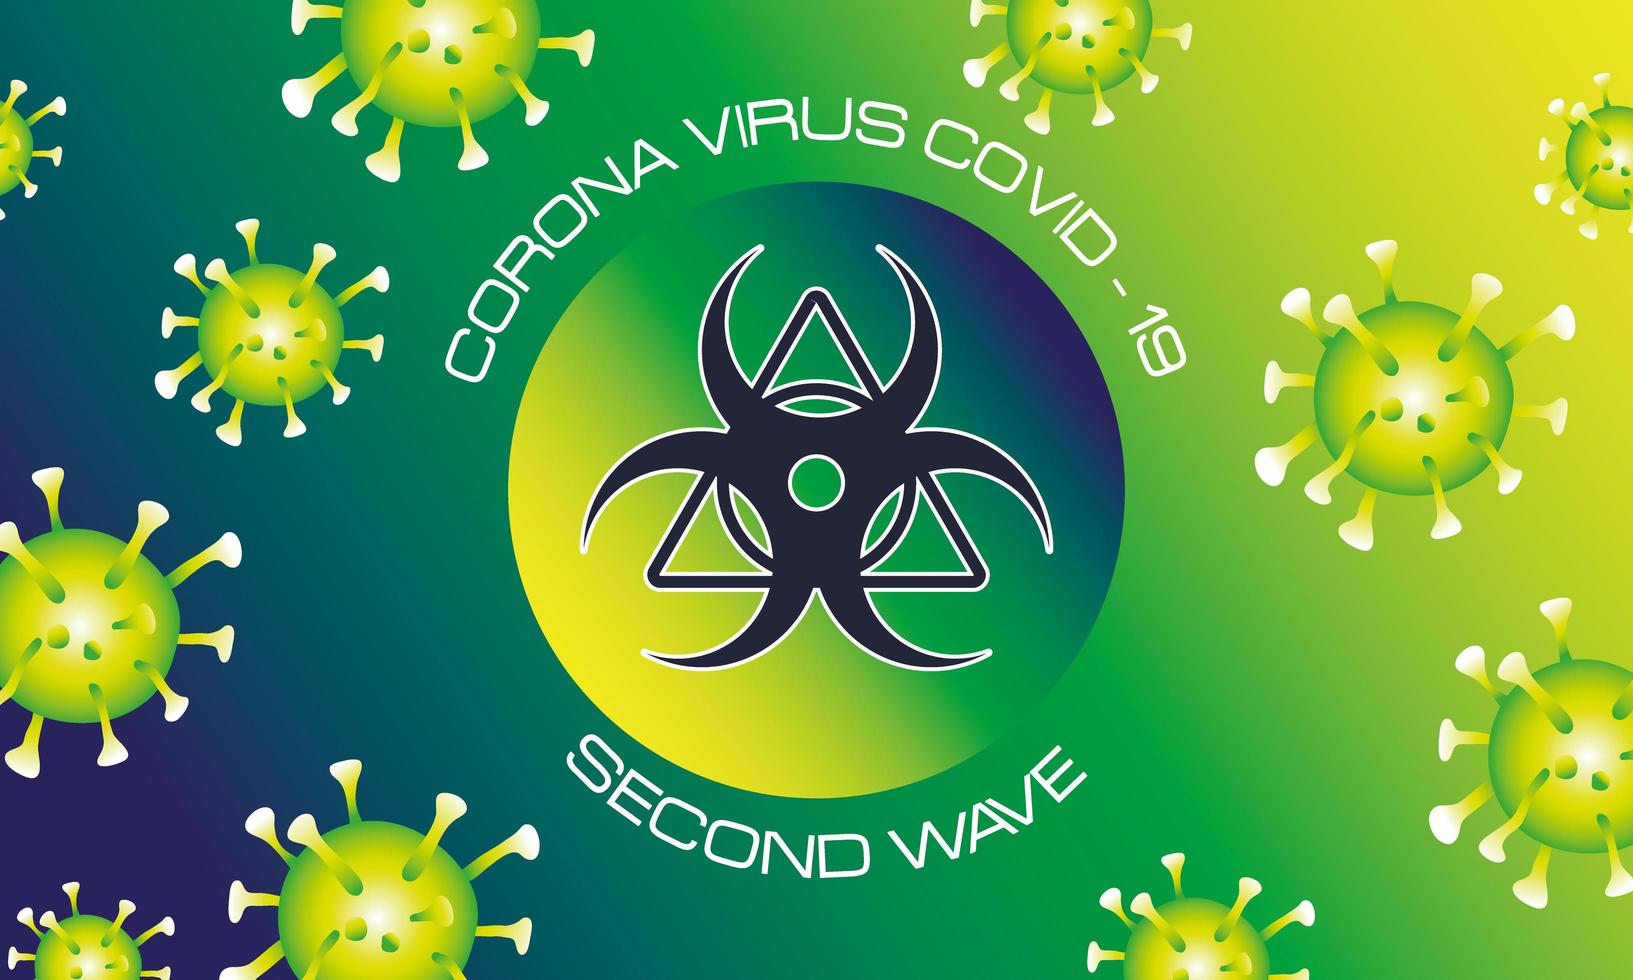 Cartel de la segunda ola del virus corona con partículas verdes y señal de peligro biológico. vector